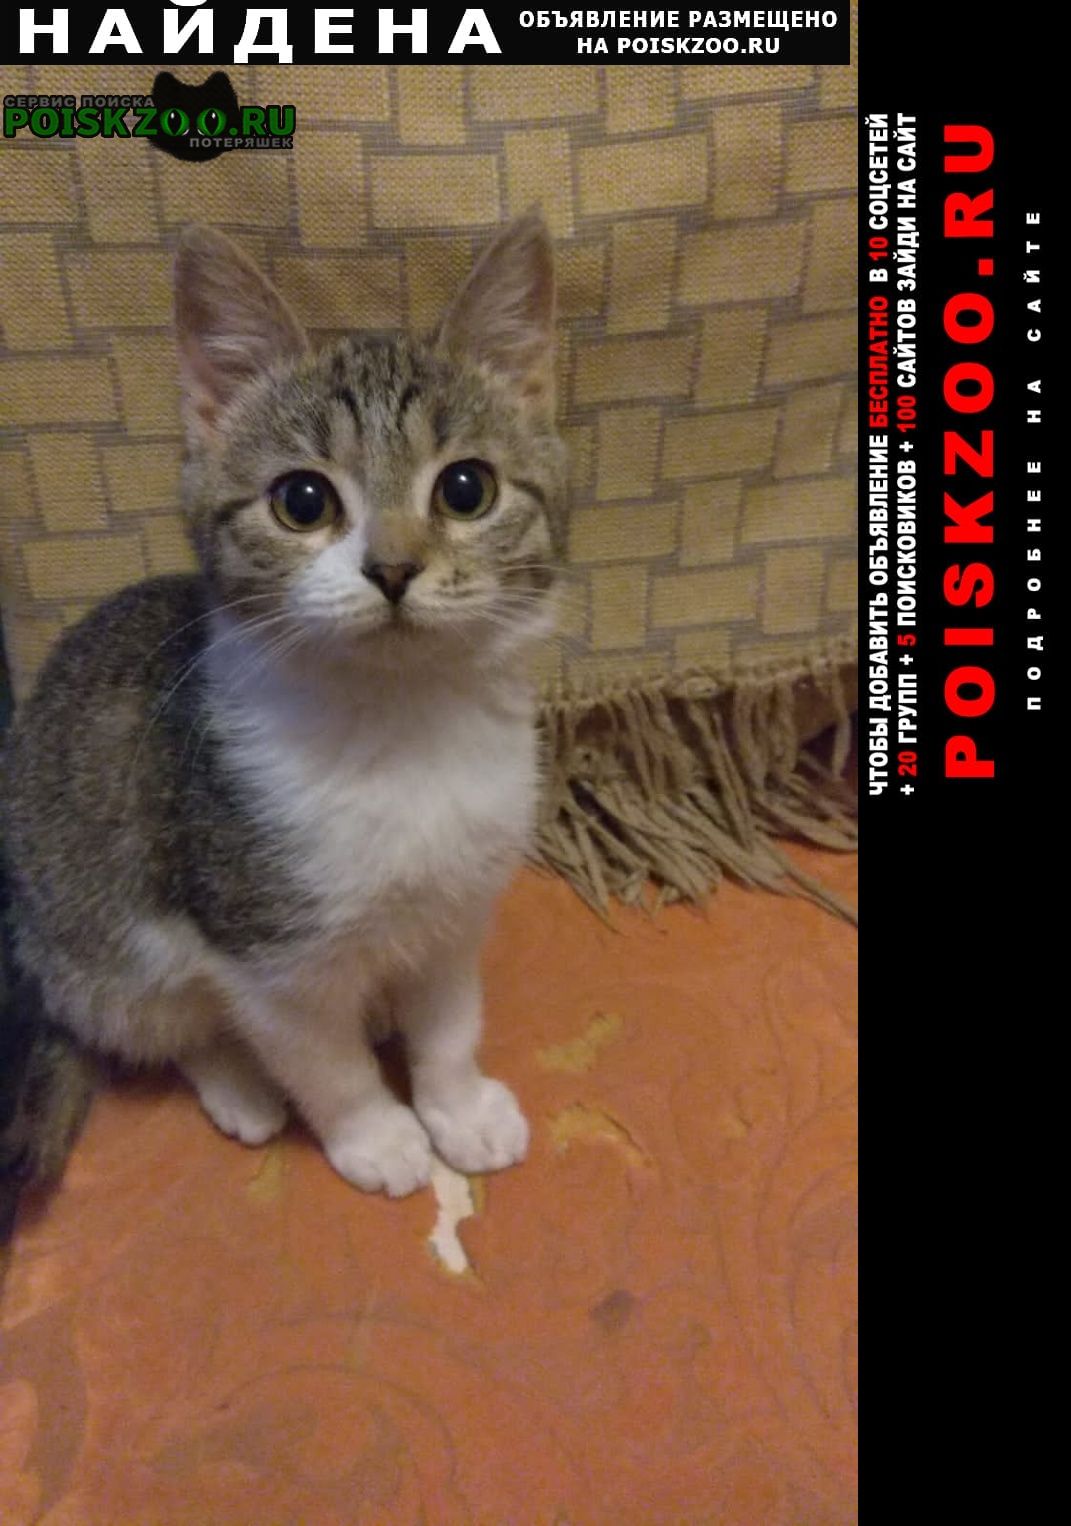 Найдена кошка в пролетарском р-не 17 января кот Тула